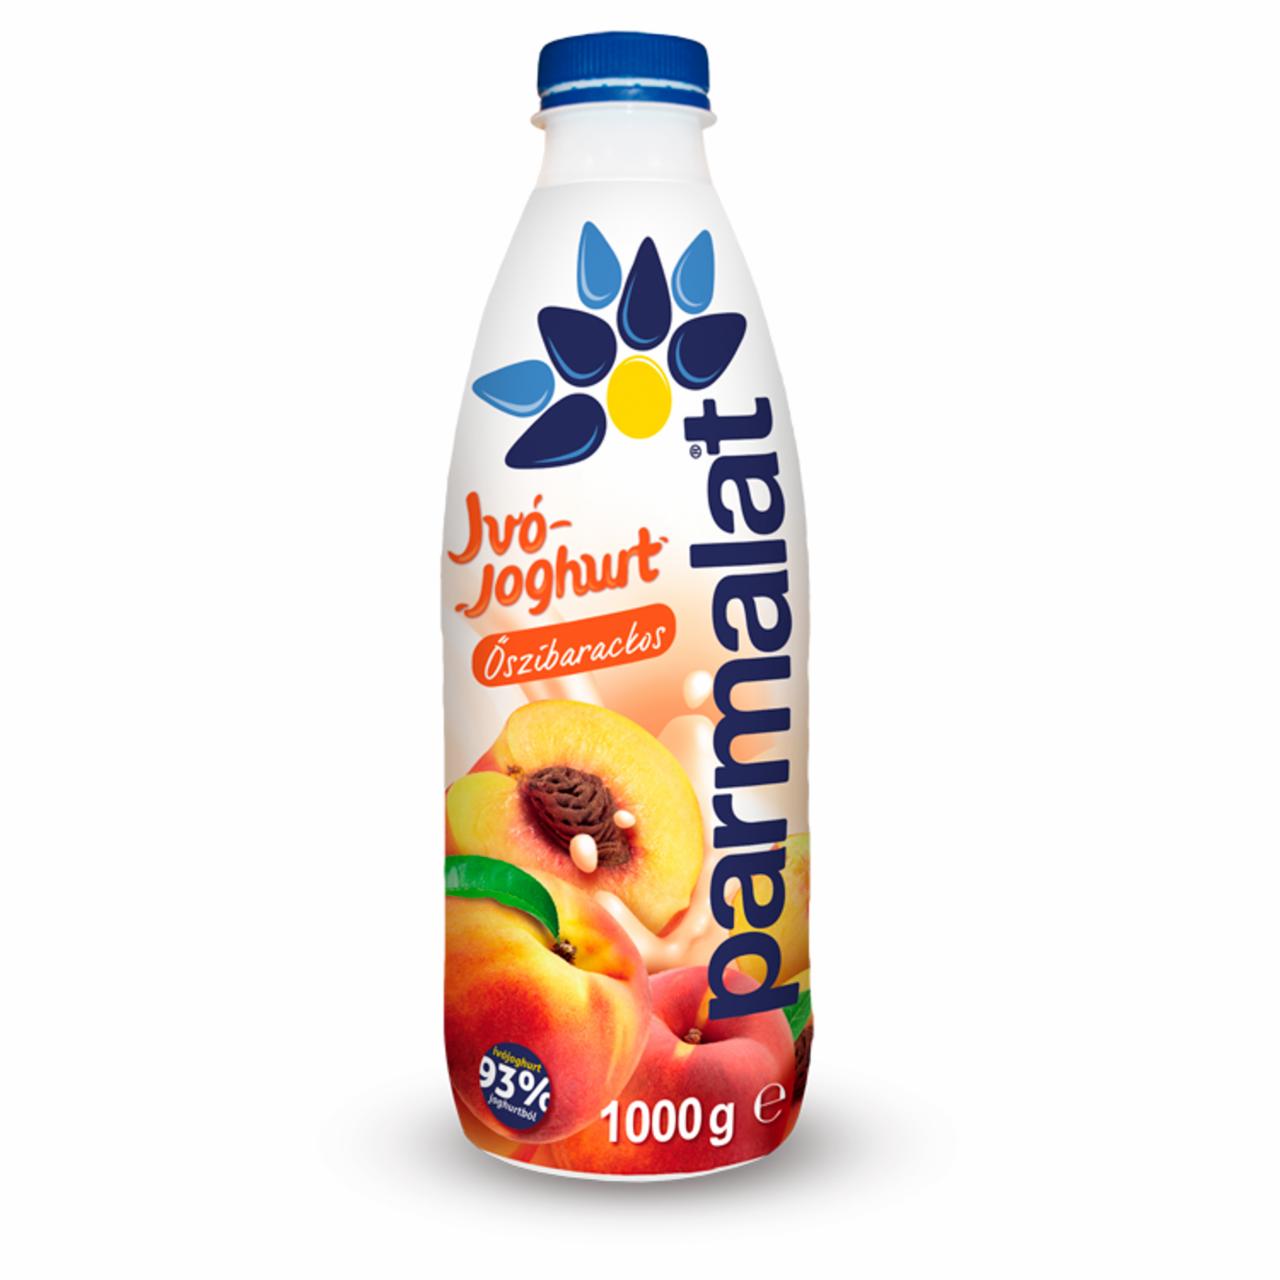 Képek - Parmalat zsírszegény őszibarackos ivójoghurt 1000 g